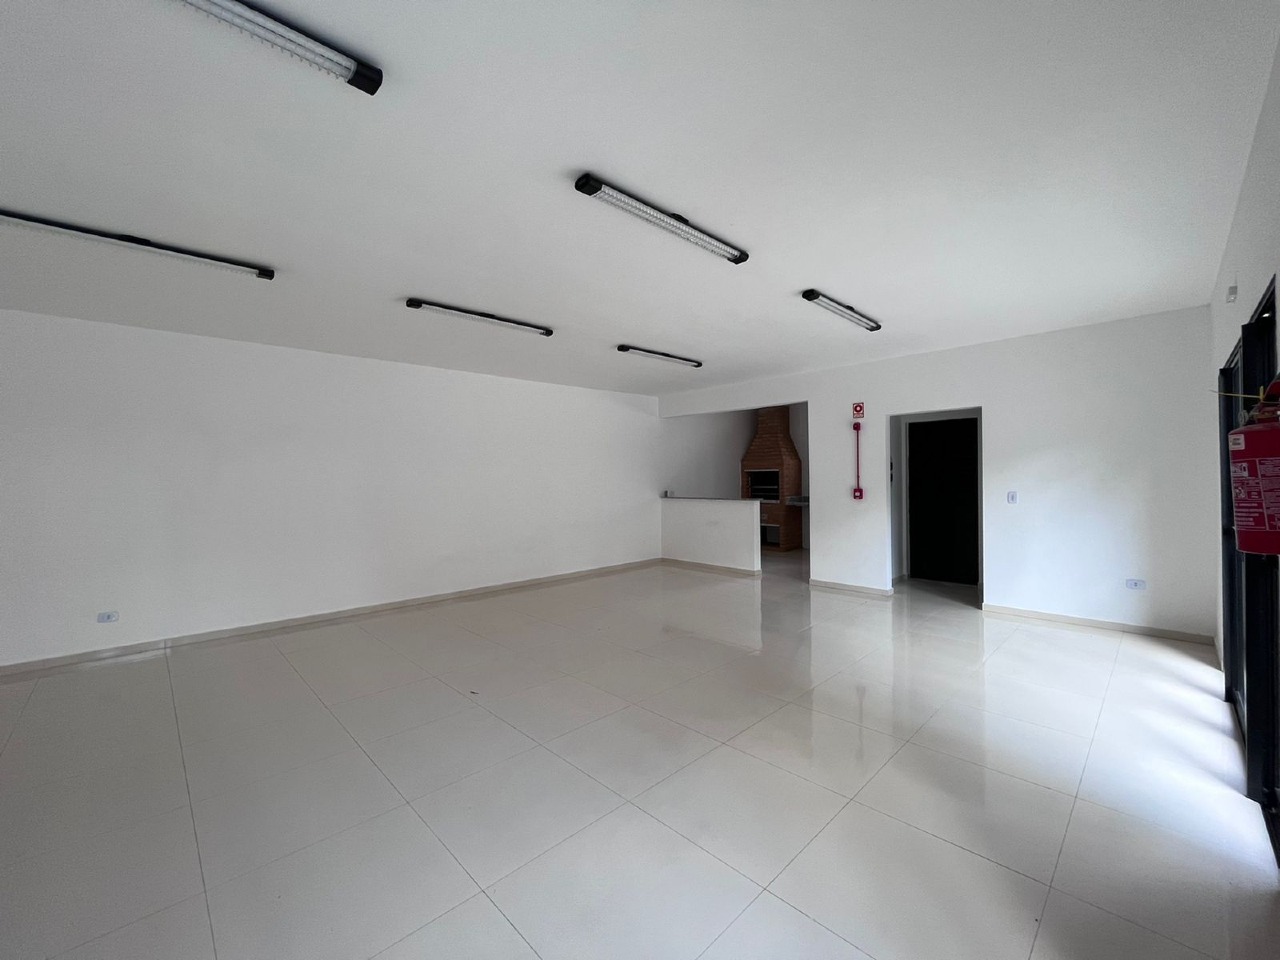 Apartamento à venda, 2 quartos, 2 vagas, no bairro Pompéia em Piracicaba - SP